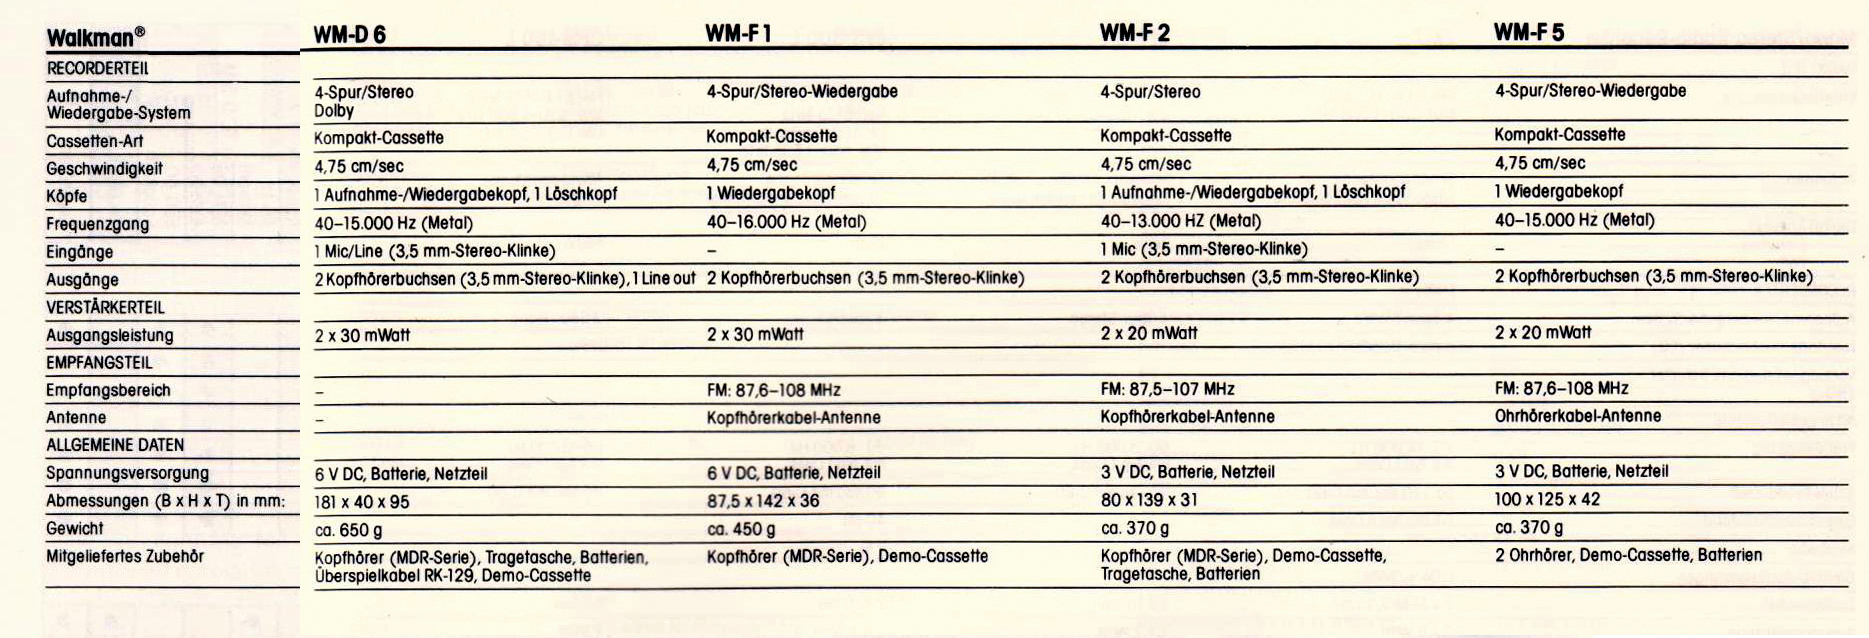 Sony WM- Daten 19841.jpg